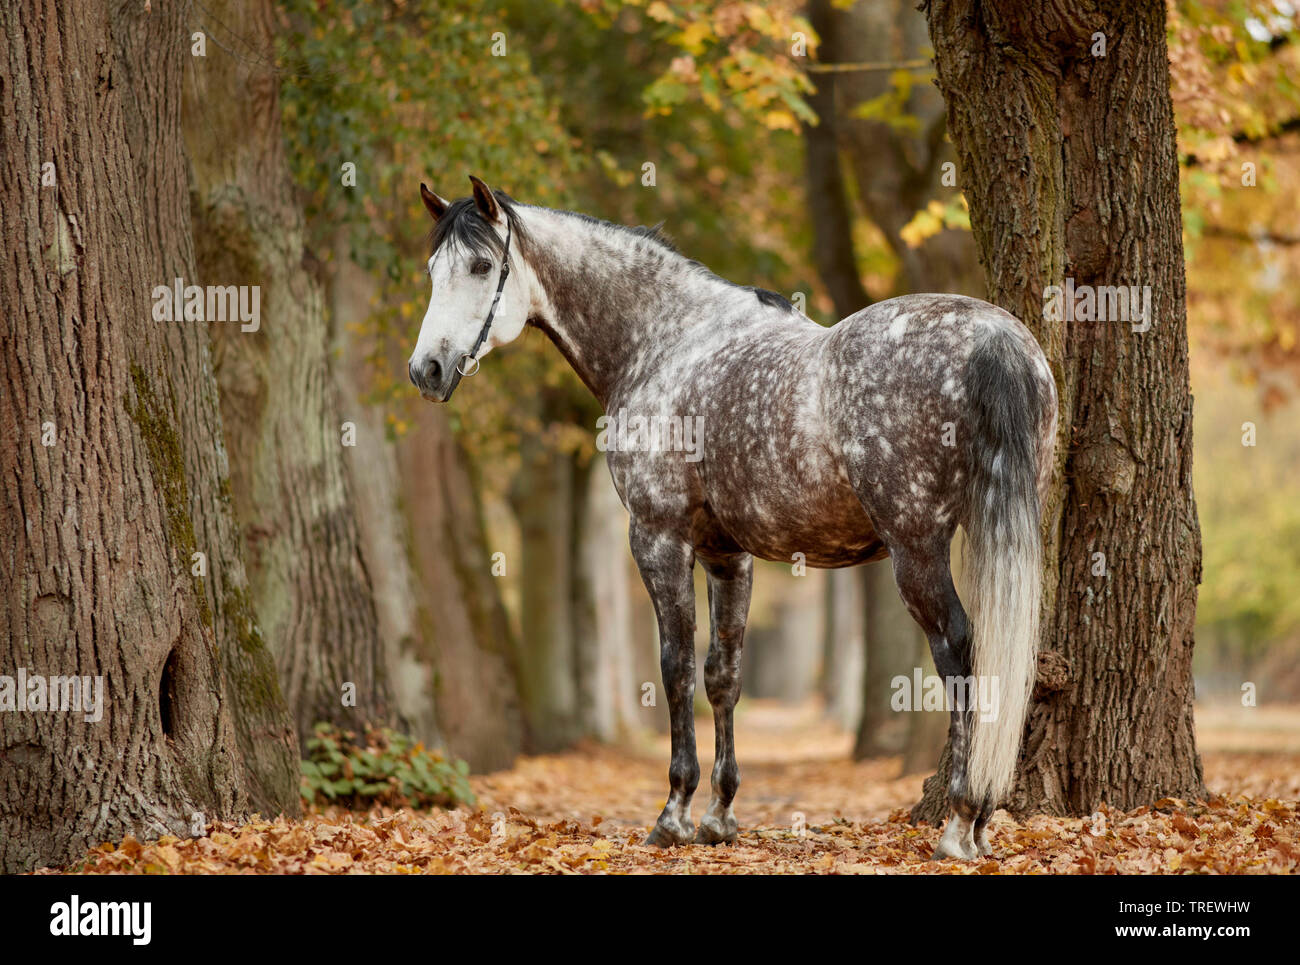 Cheval Espagnol pur, andalou. Gris pommelé des profils debout dans un parc en automne. Allemagne Banque D'Images